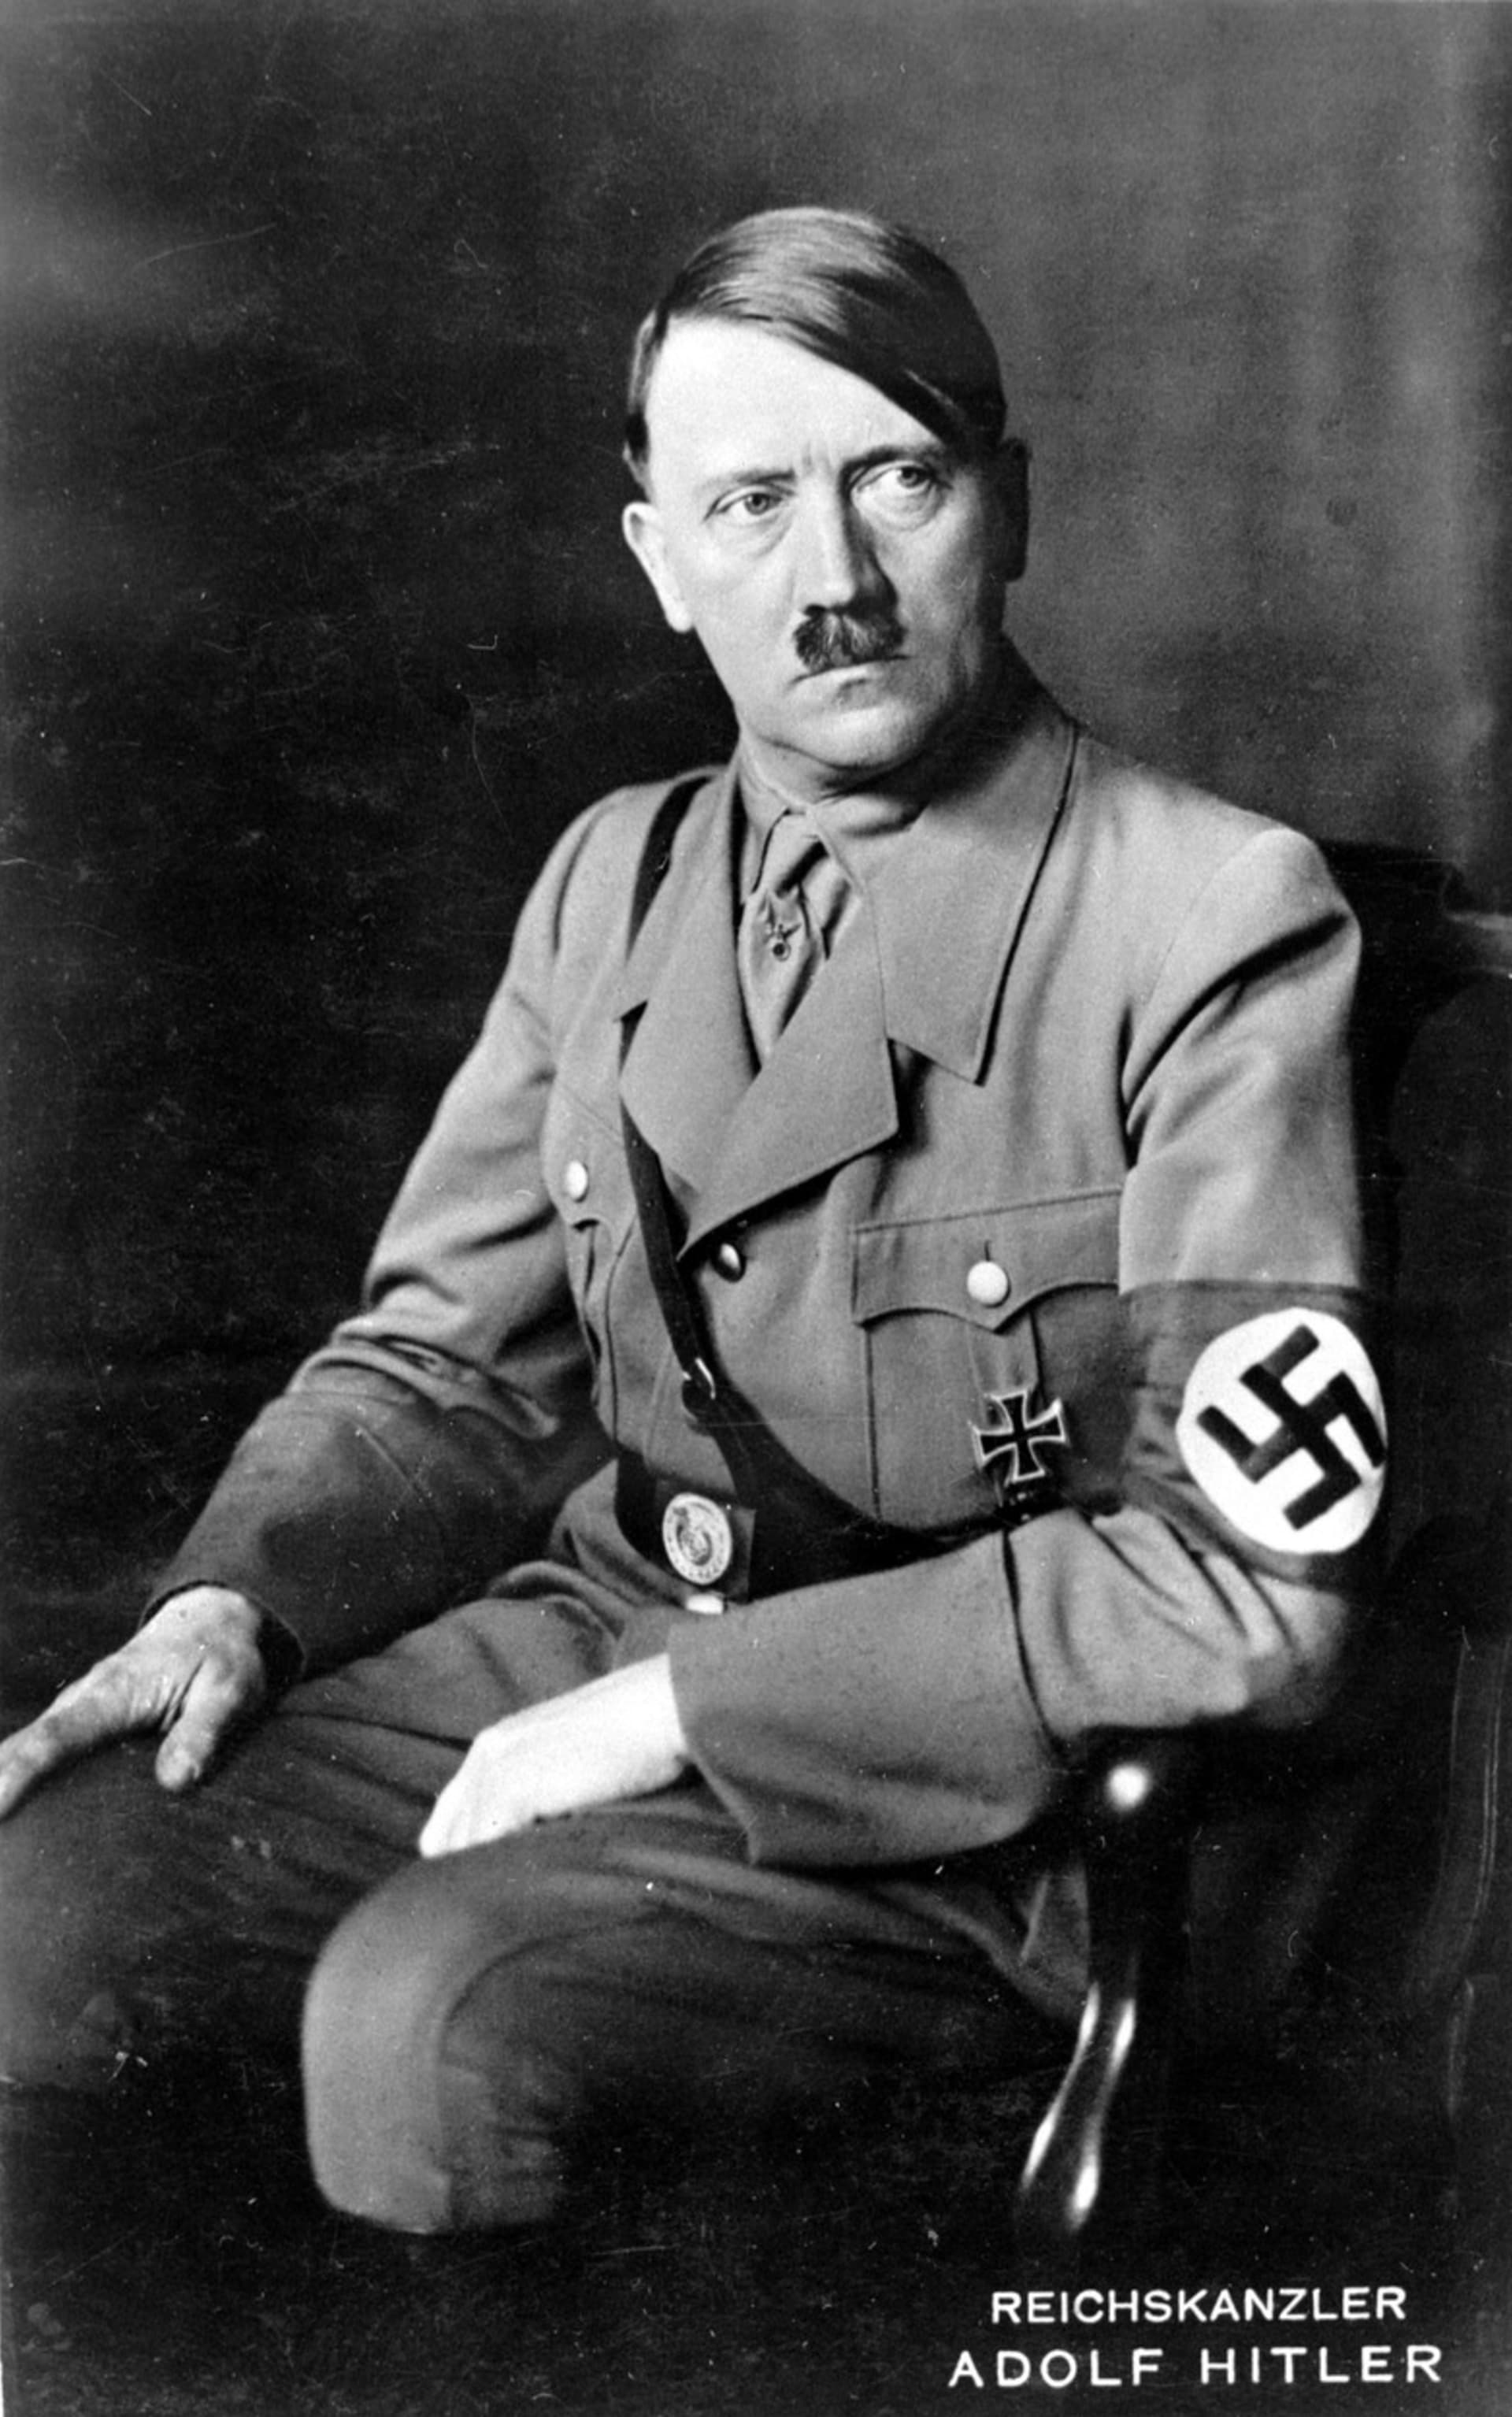 Romano Lukas Hitler je údajně posledním žijícím příbuzným Adolfa Hitlera.